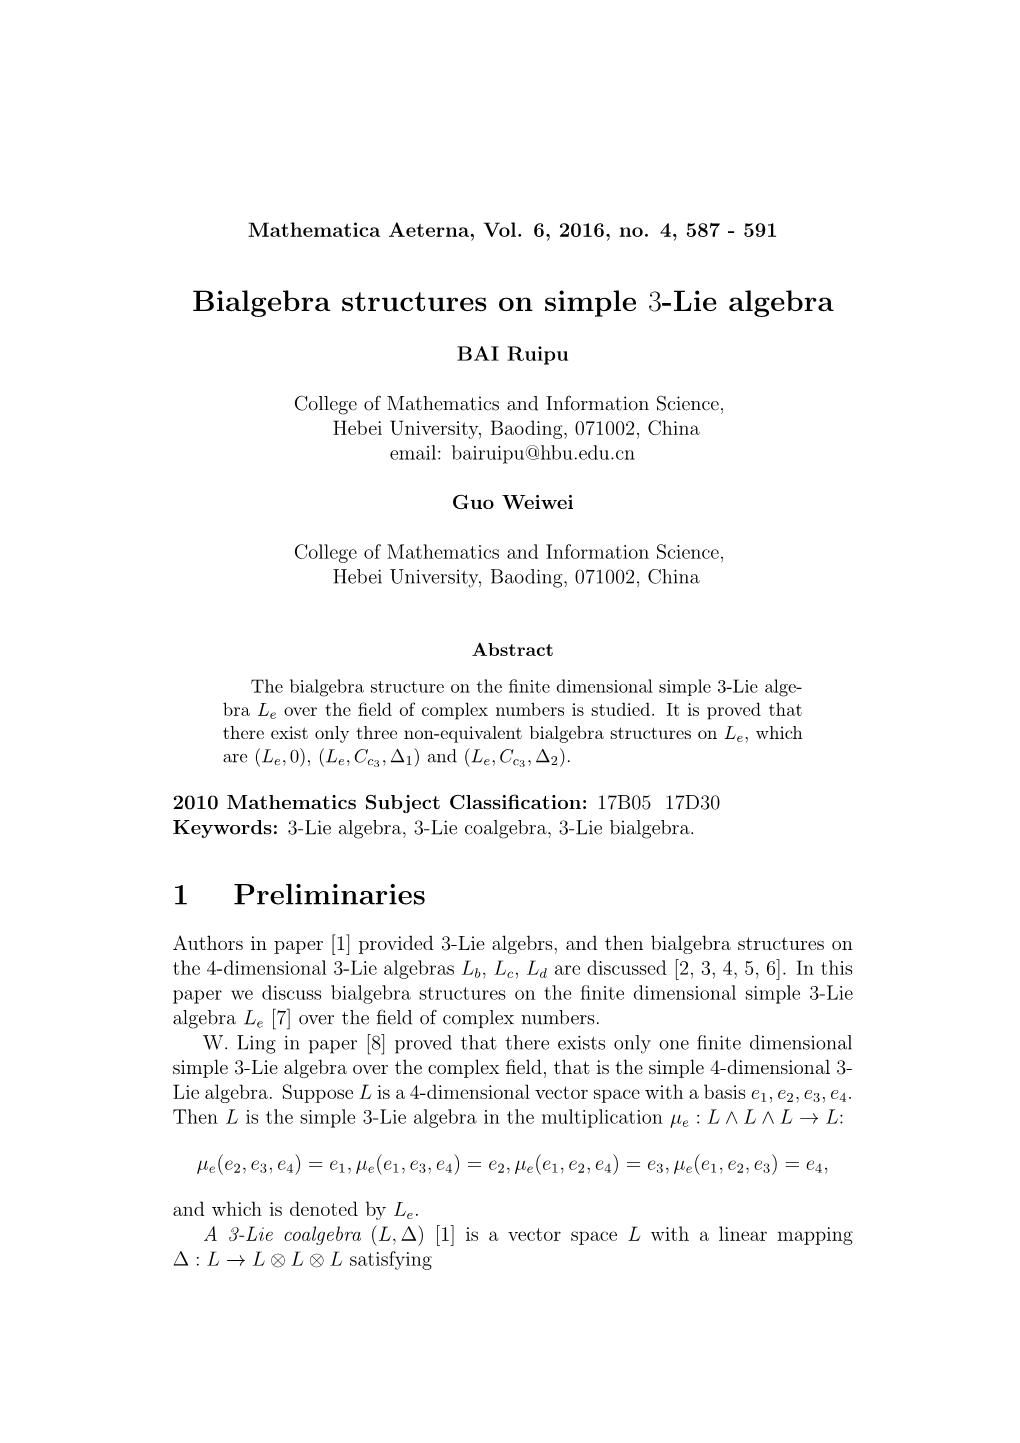 Bialgebra Structures on Simple 3-Lie Algebra 1 Preliminaries